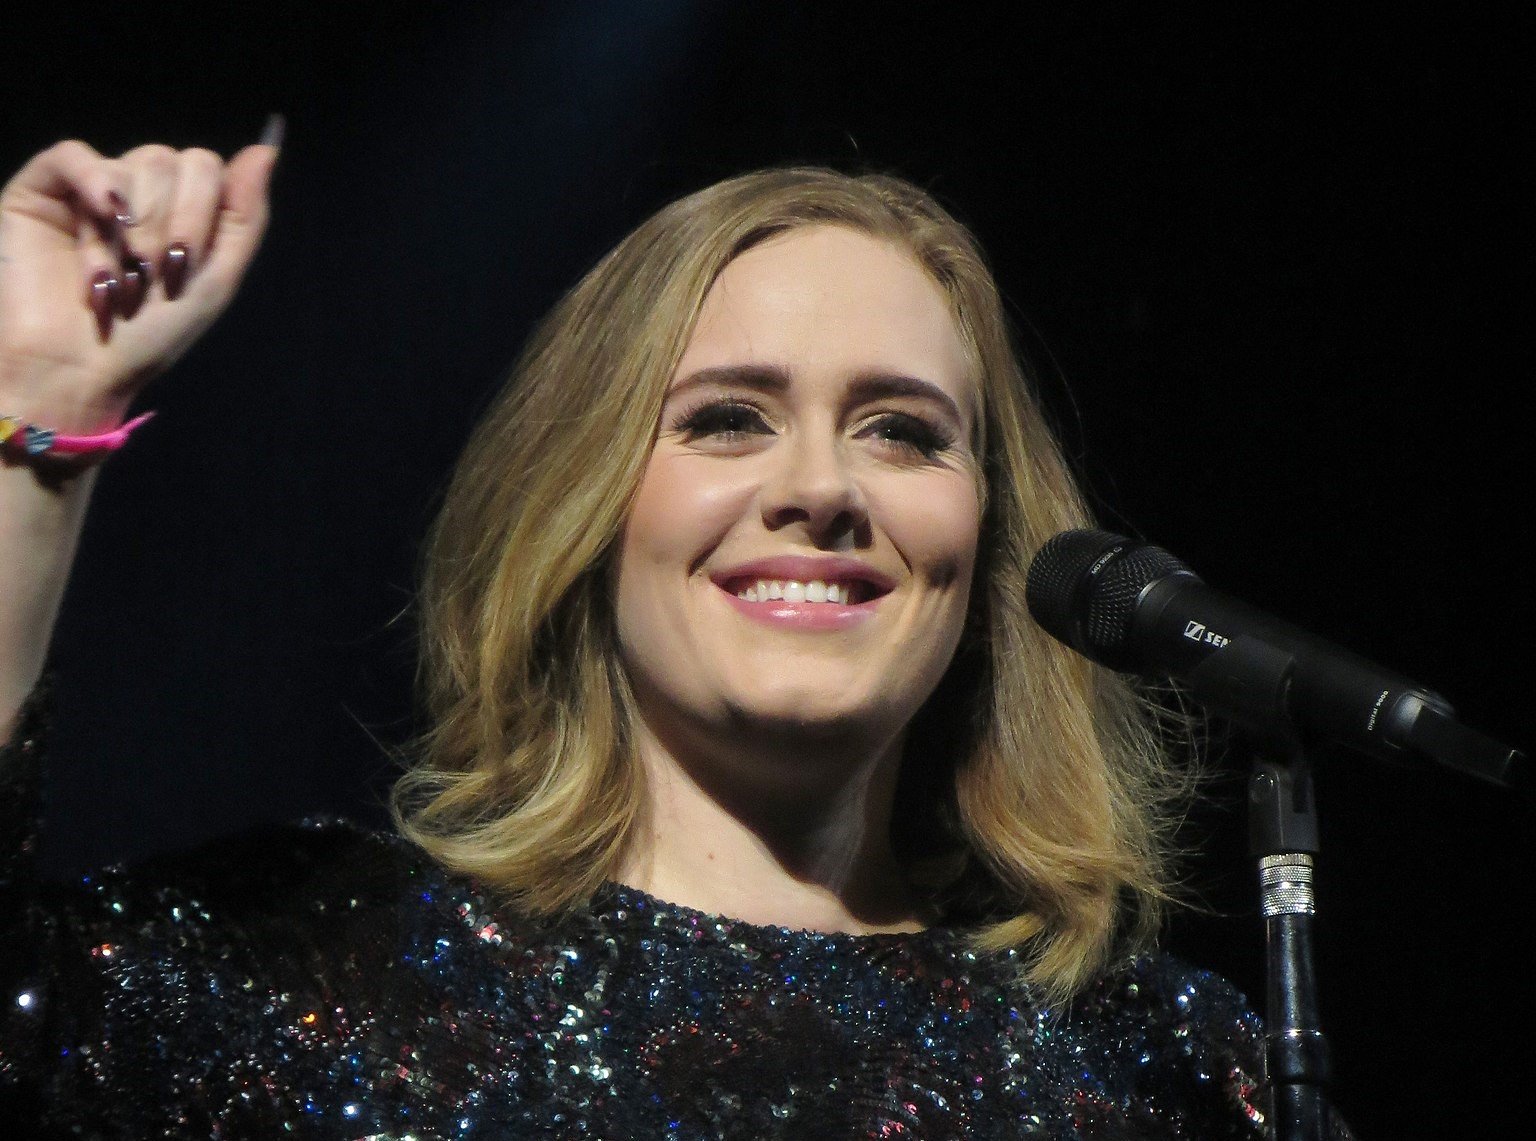 Sängerin Adele bei einem Auftritt